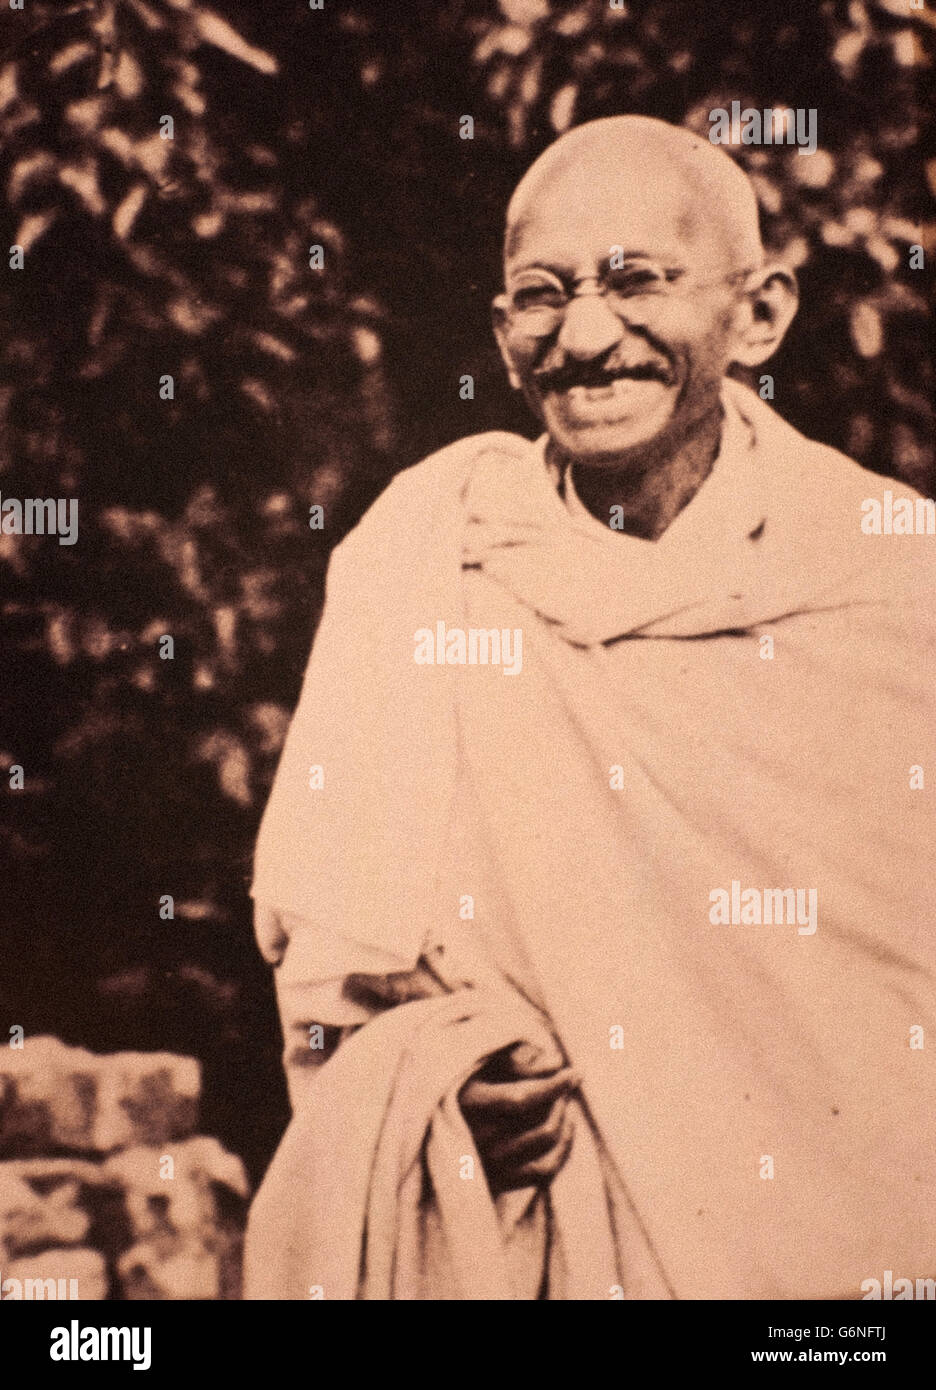 Mohandas Karamchand Gandhi -dit le Mahatma (Porbandar, Octobre 2, 1869 - New Delhi, 30 janvier 1948) - Banque D'Images